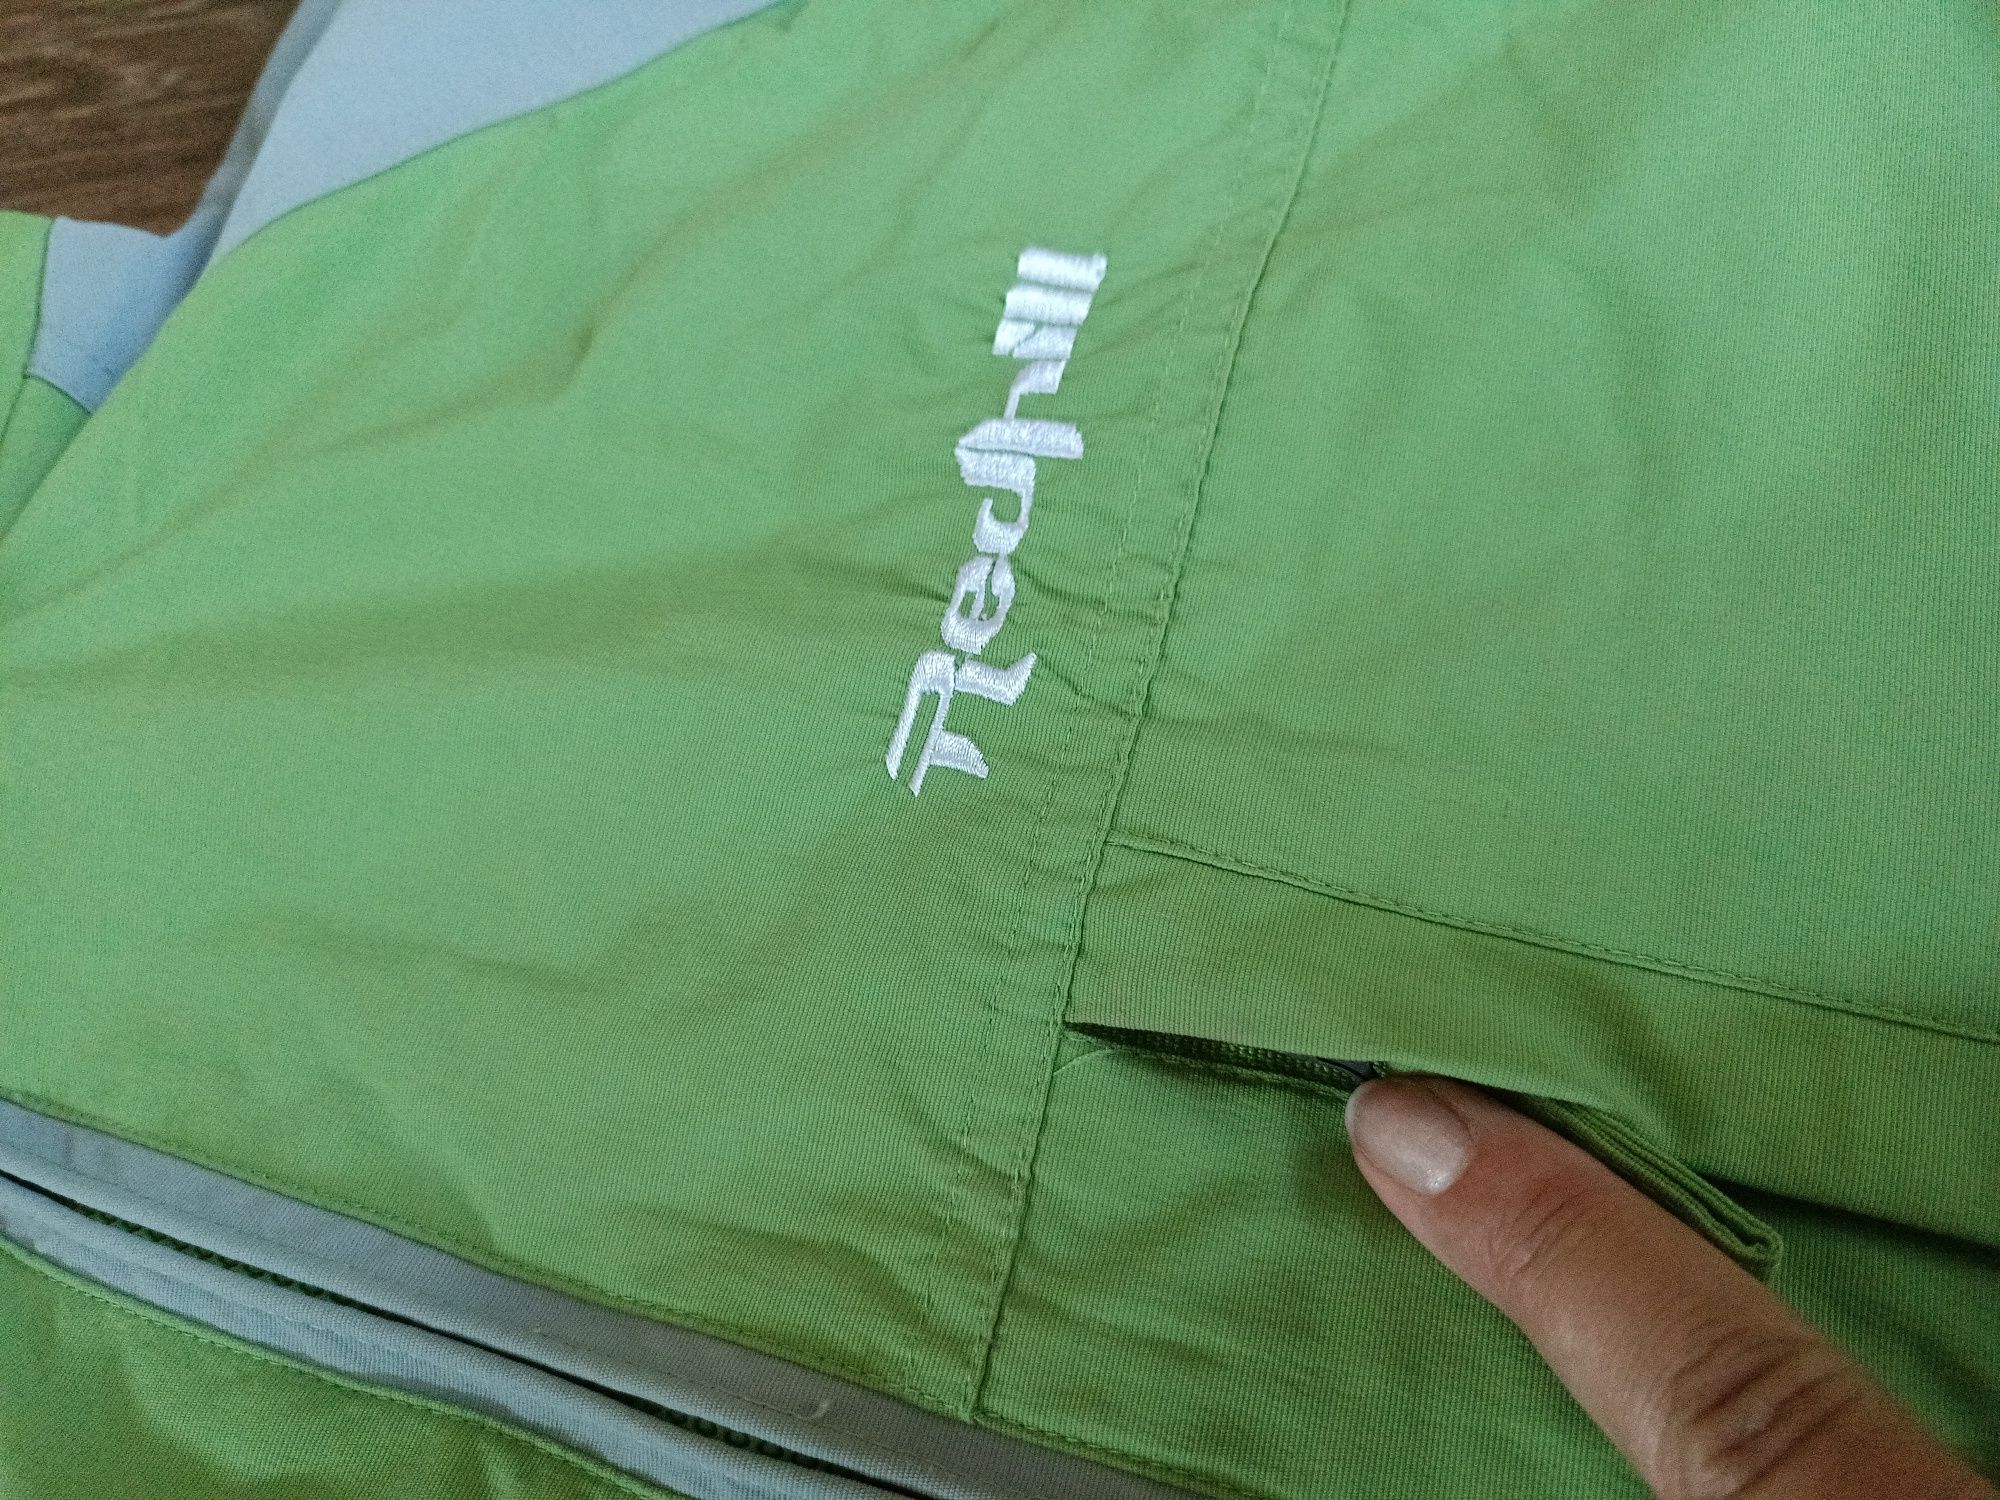 Redhill kurtka rozmiar M zielona męska przeciwdeszczowa nylon